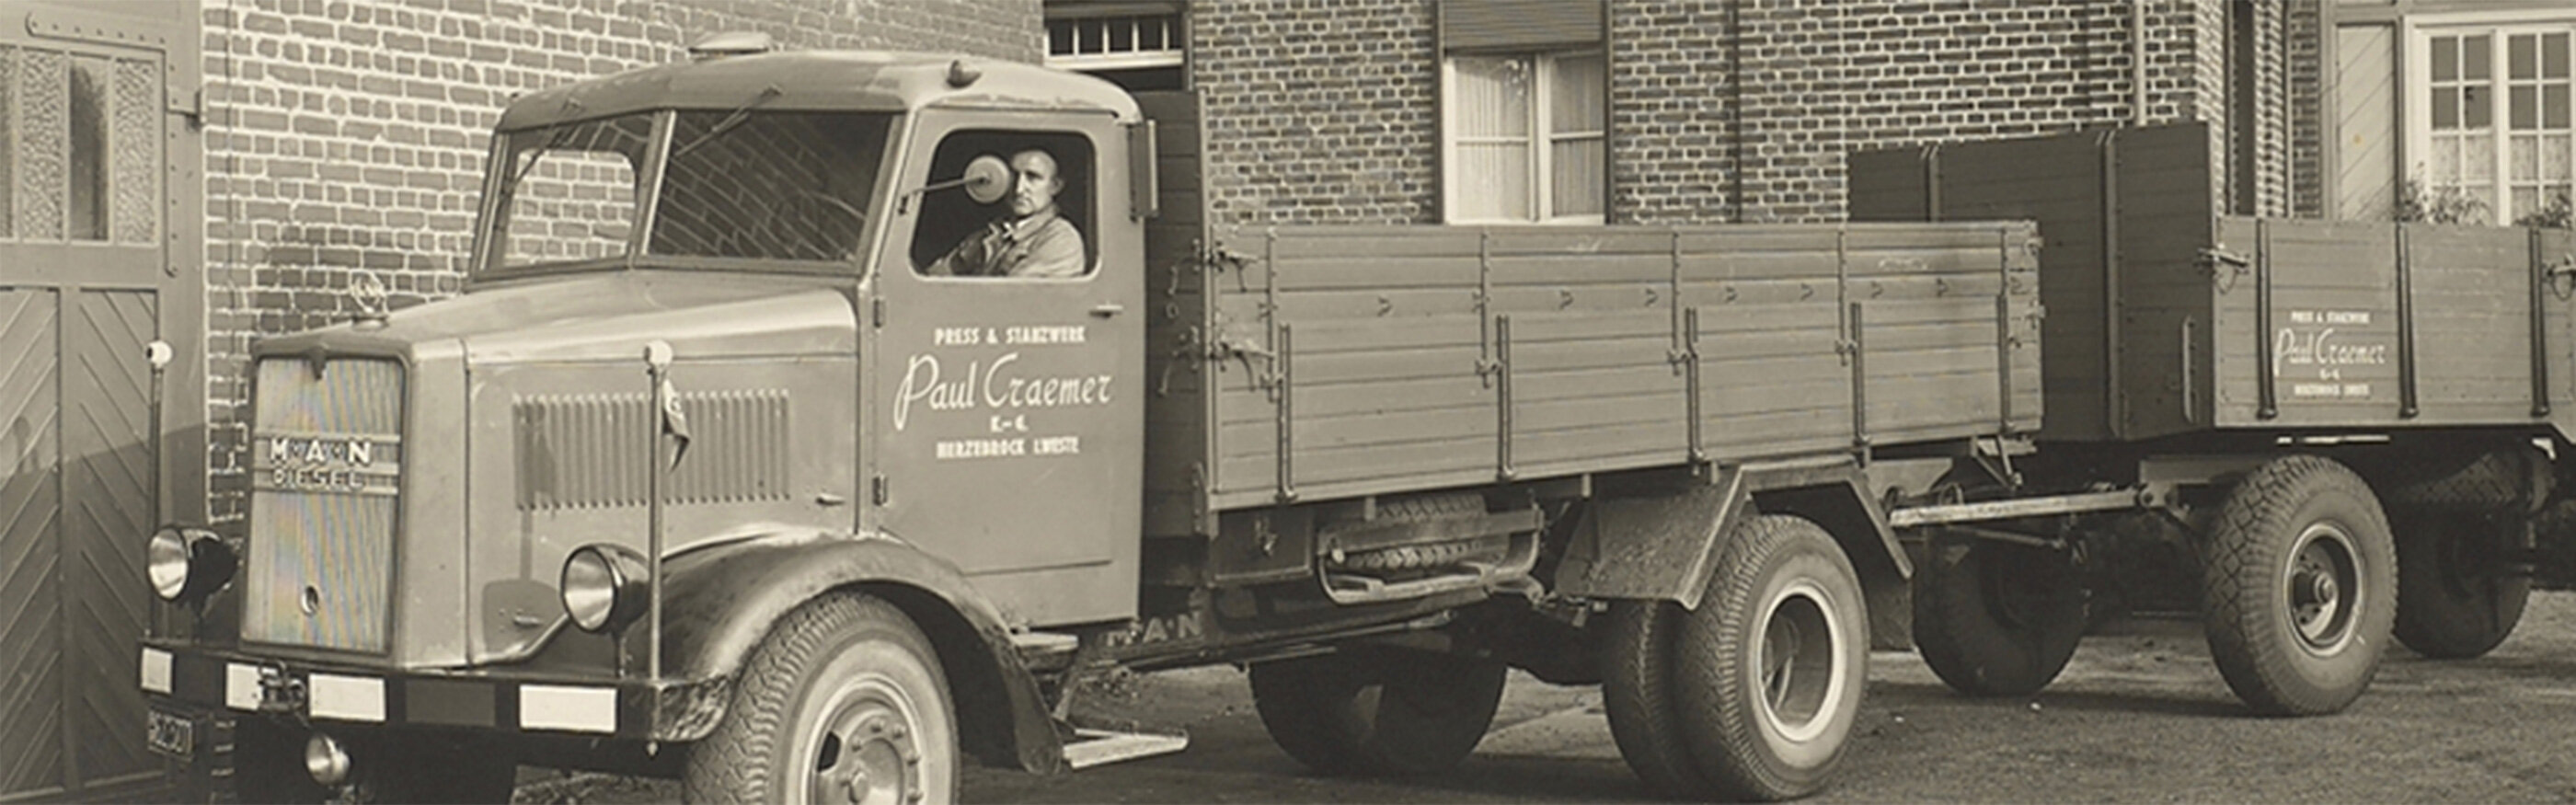 Altes Bild von einem Lastkraftwagen mit Paul Craemer Aufschrift